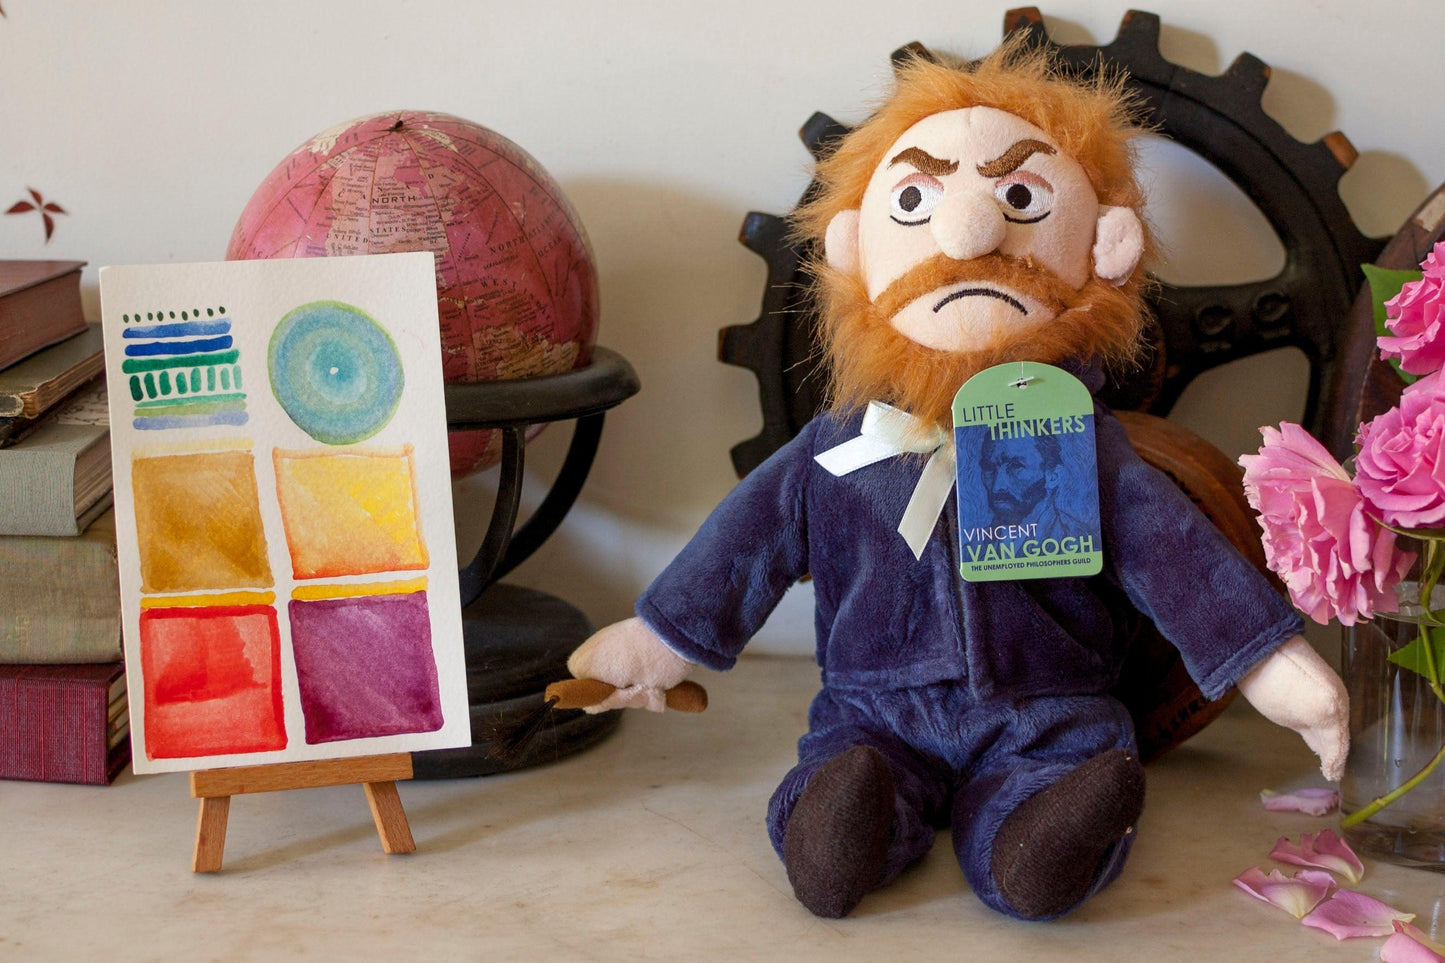 Vincent van Gogh „Kleiner Denker“ Plüschpuppe